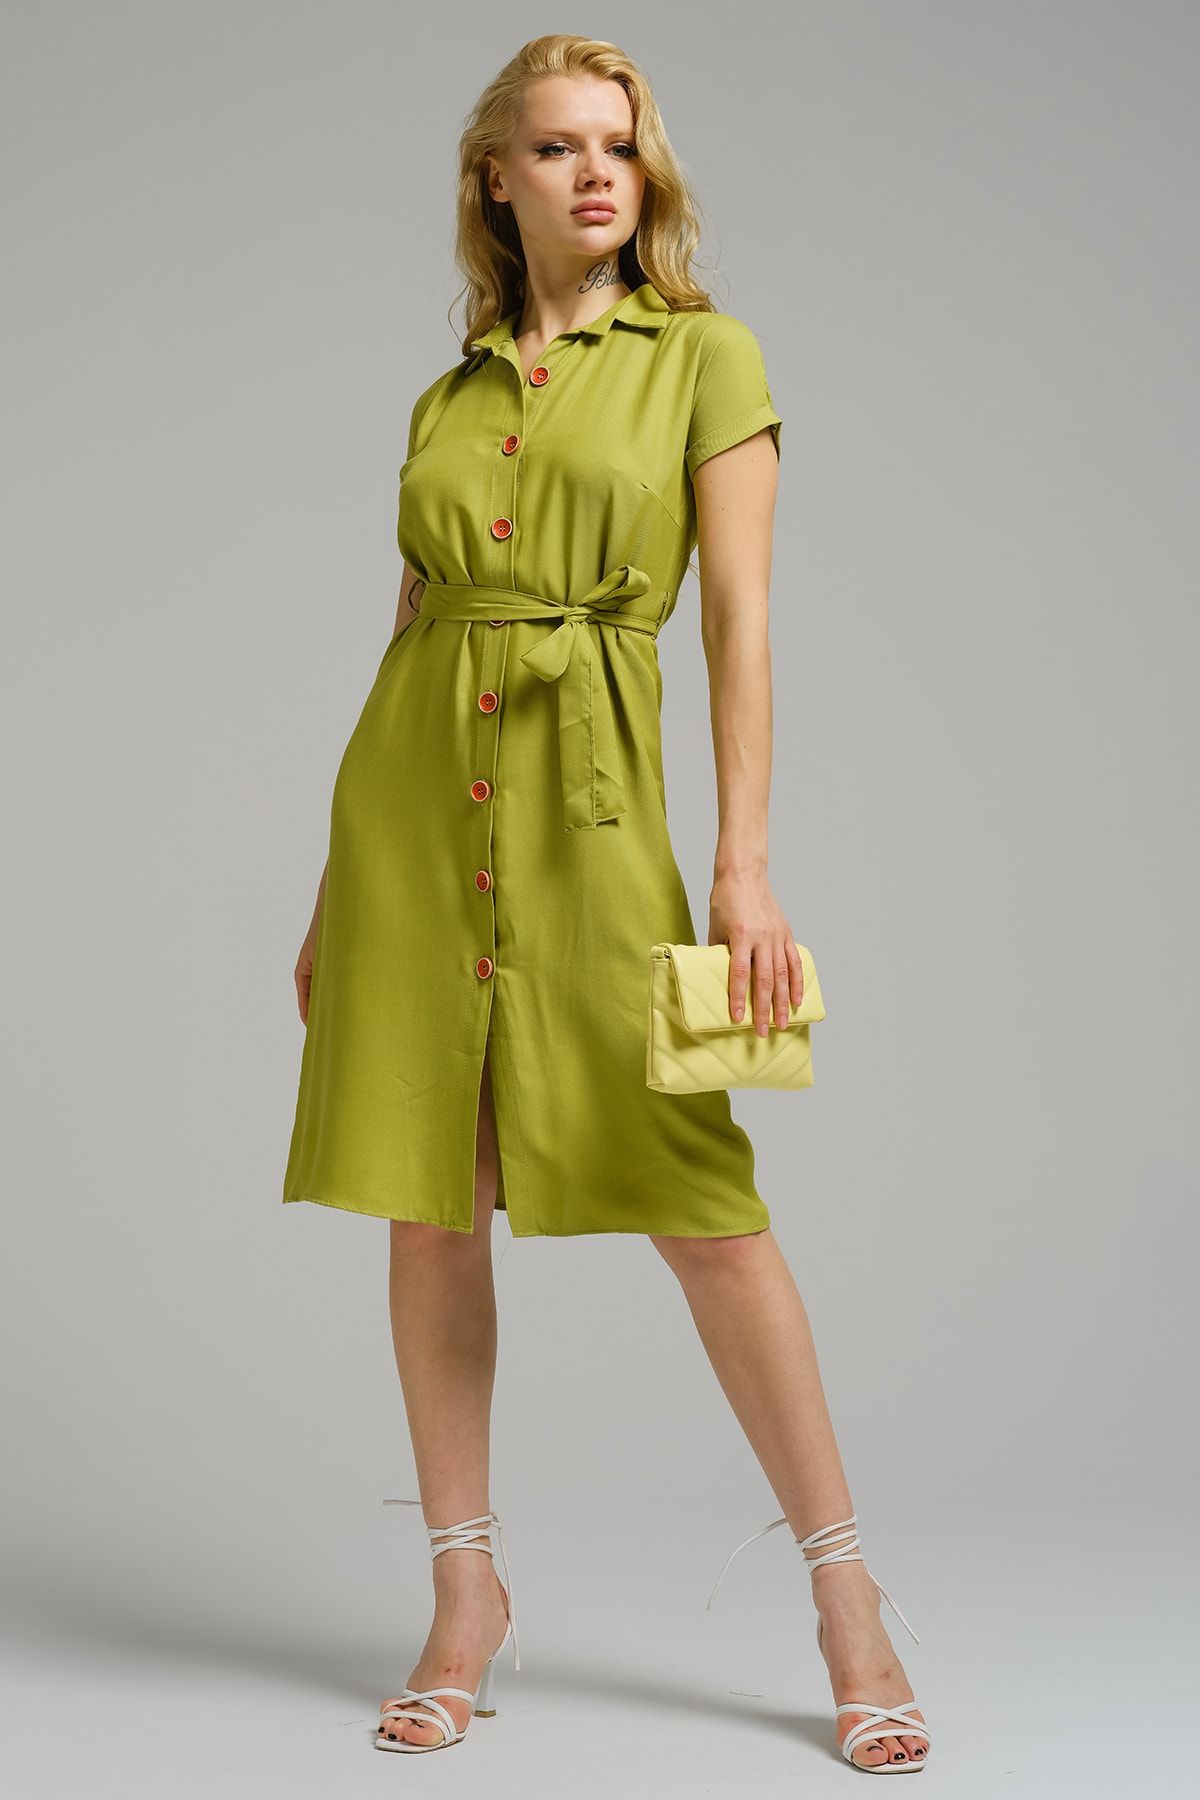 Kadın Yağ Yeşili Beli Kemerli Kısa Kol Gömlek Elbise ARM-19Y001068